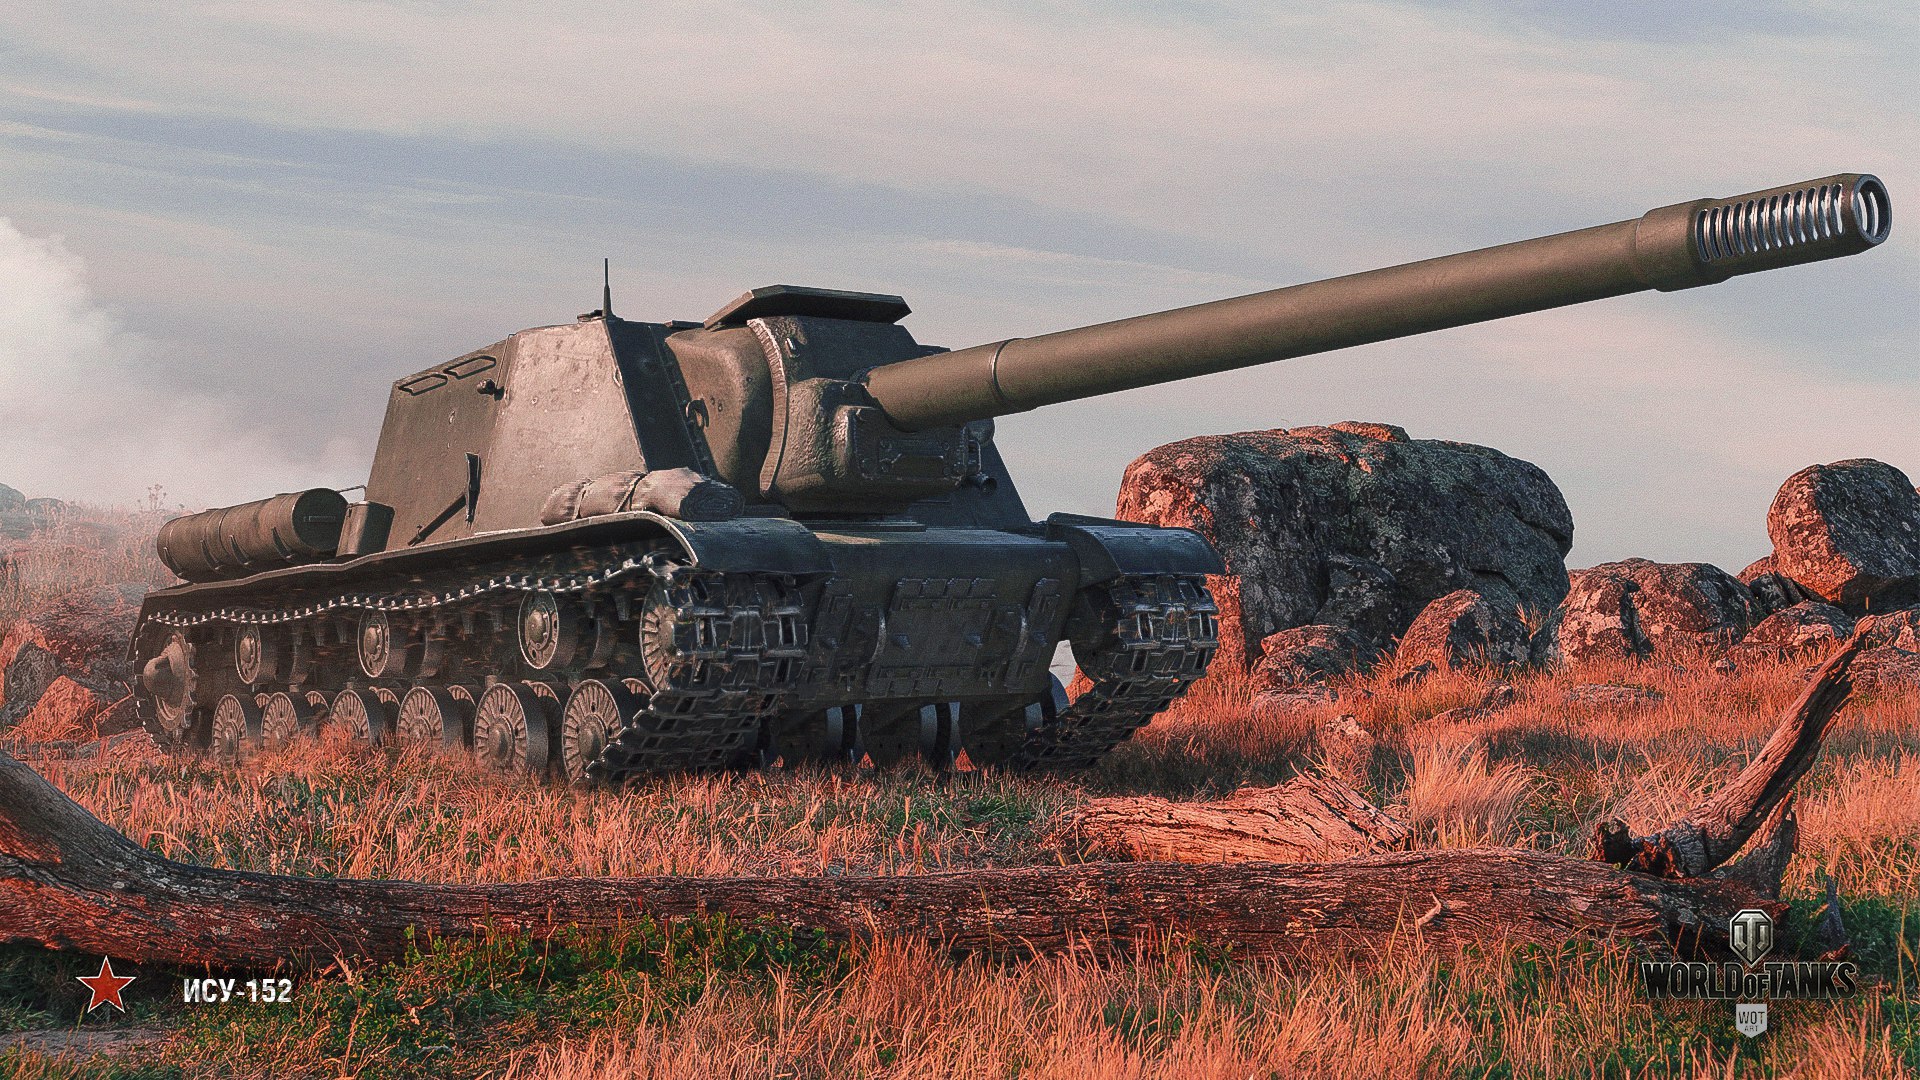 Лу ису. ИСУ-152 World of Tanks. ИСУ-152 зверобой World of Tanks. Танк ИСУ 152 зверобой. «Зверобой» ИСУ-152 WOT.